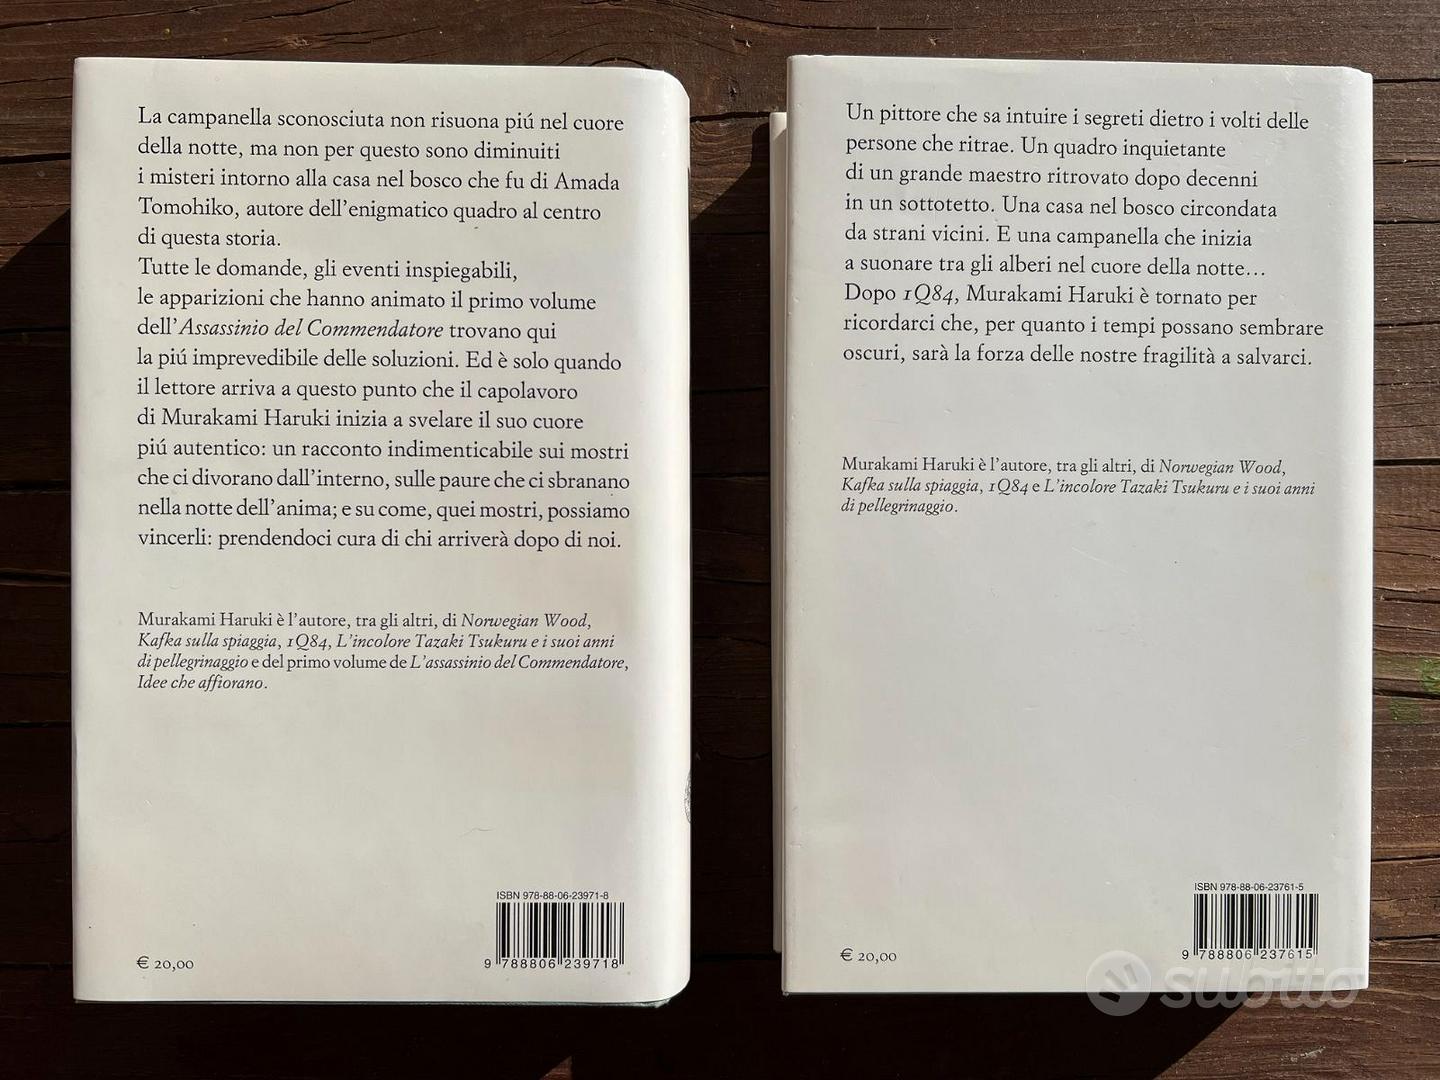 L'assasinio del commendatore Murakami Haruki (1e2) - Libri e Riviste In  vendita a Pavia